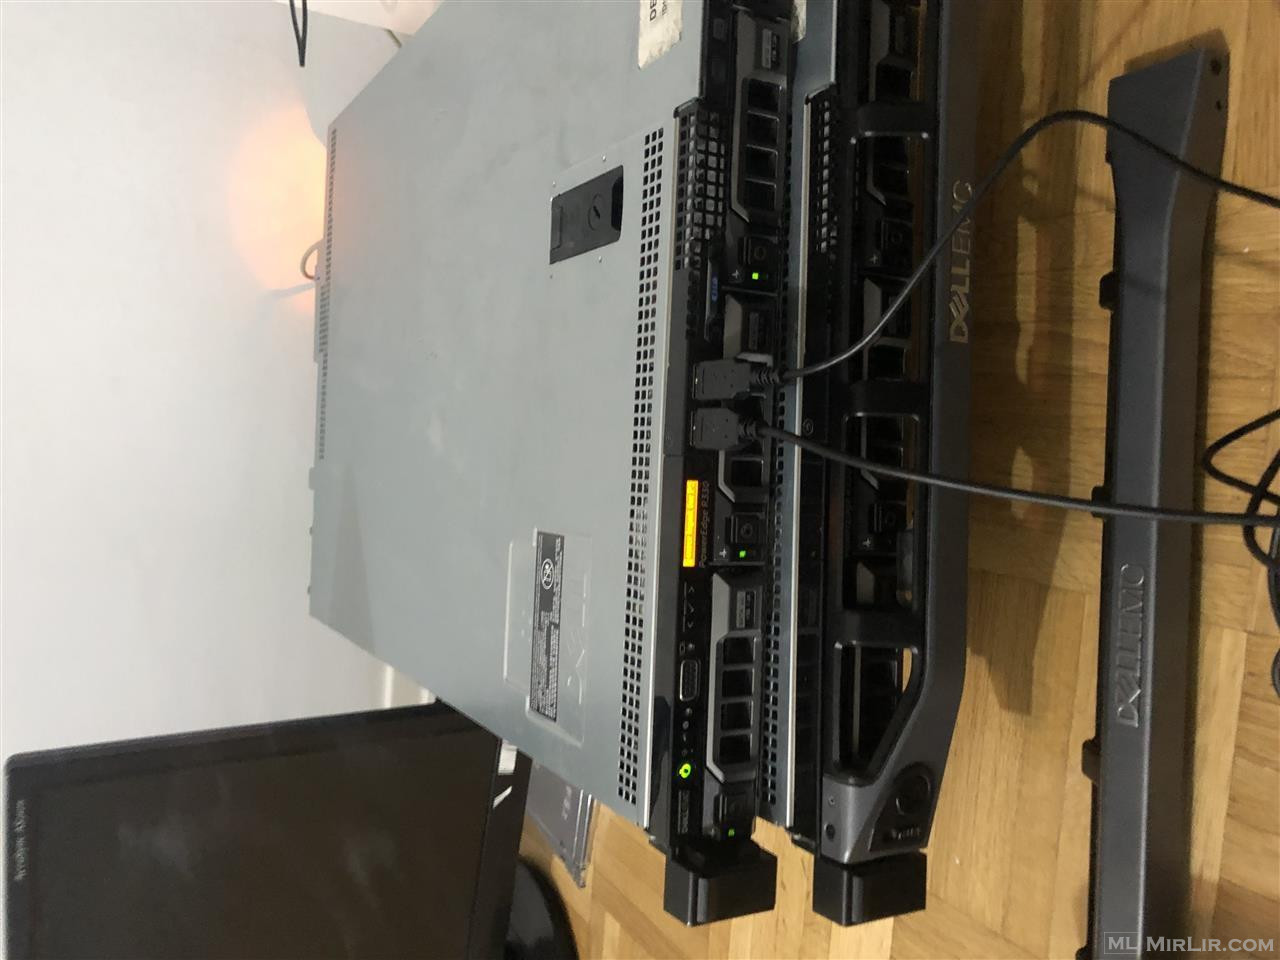 Shiten 2 server Dell PowerEdge R330 Rack, gen13